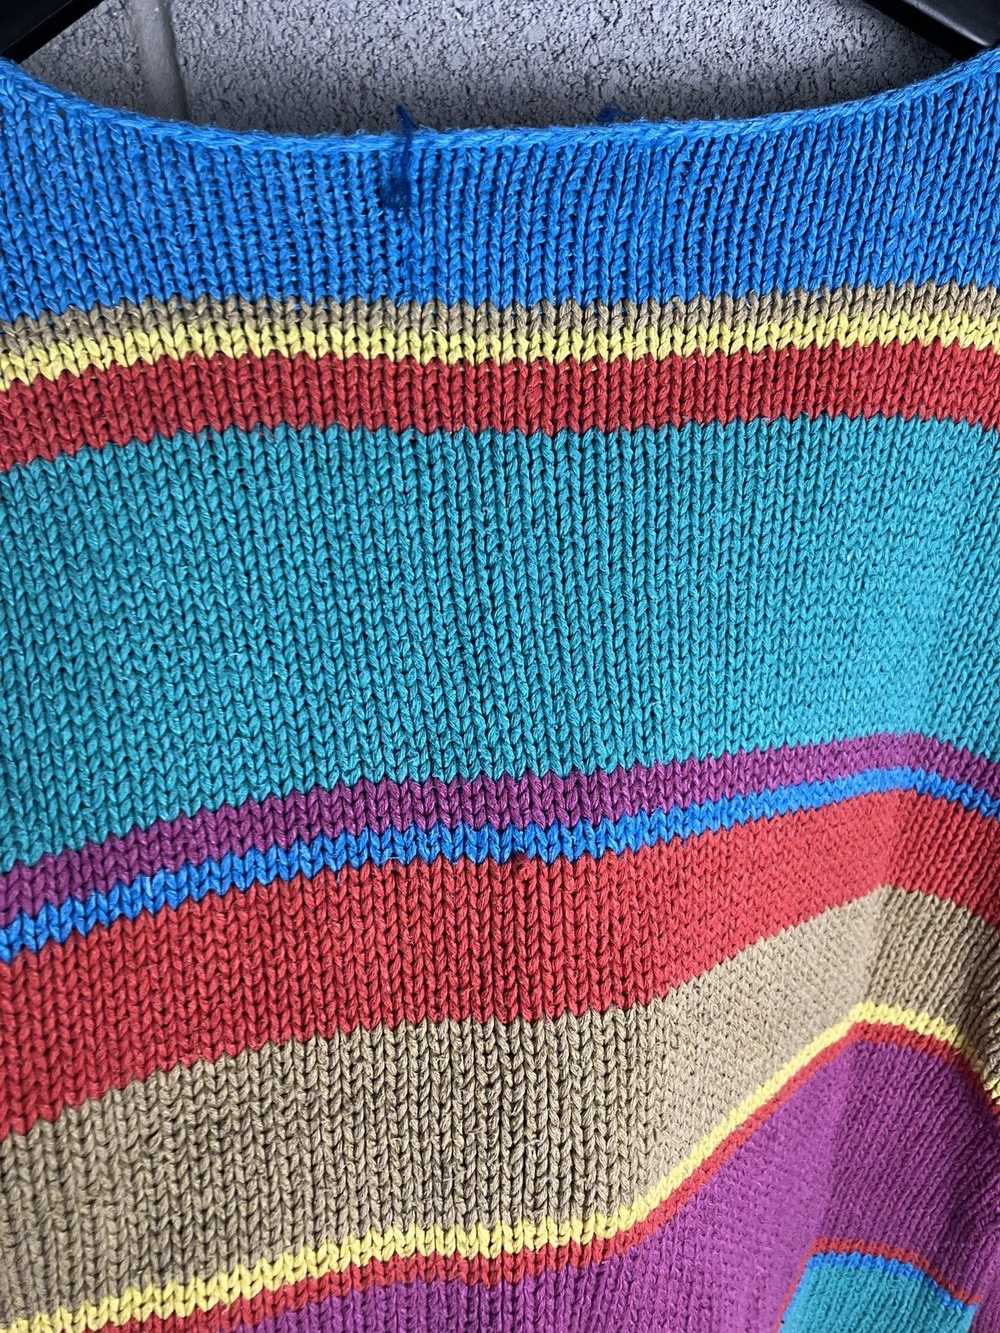 Coloured Cable Knit Sweater × Ralph Lauren × Vint… - image 9